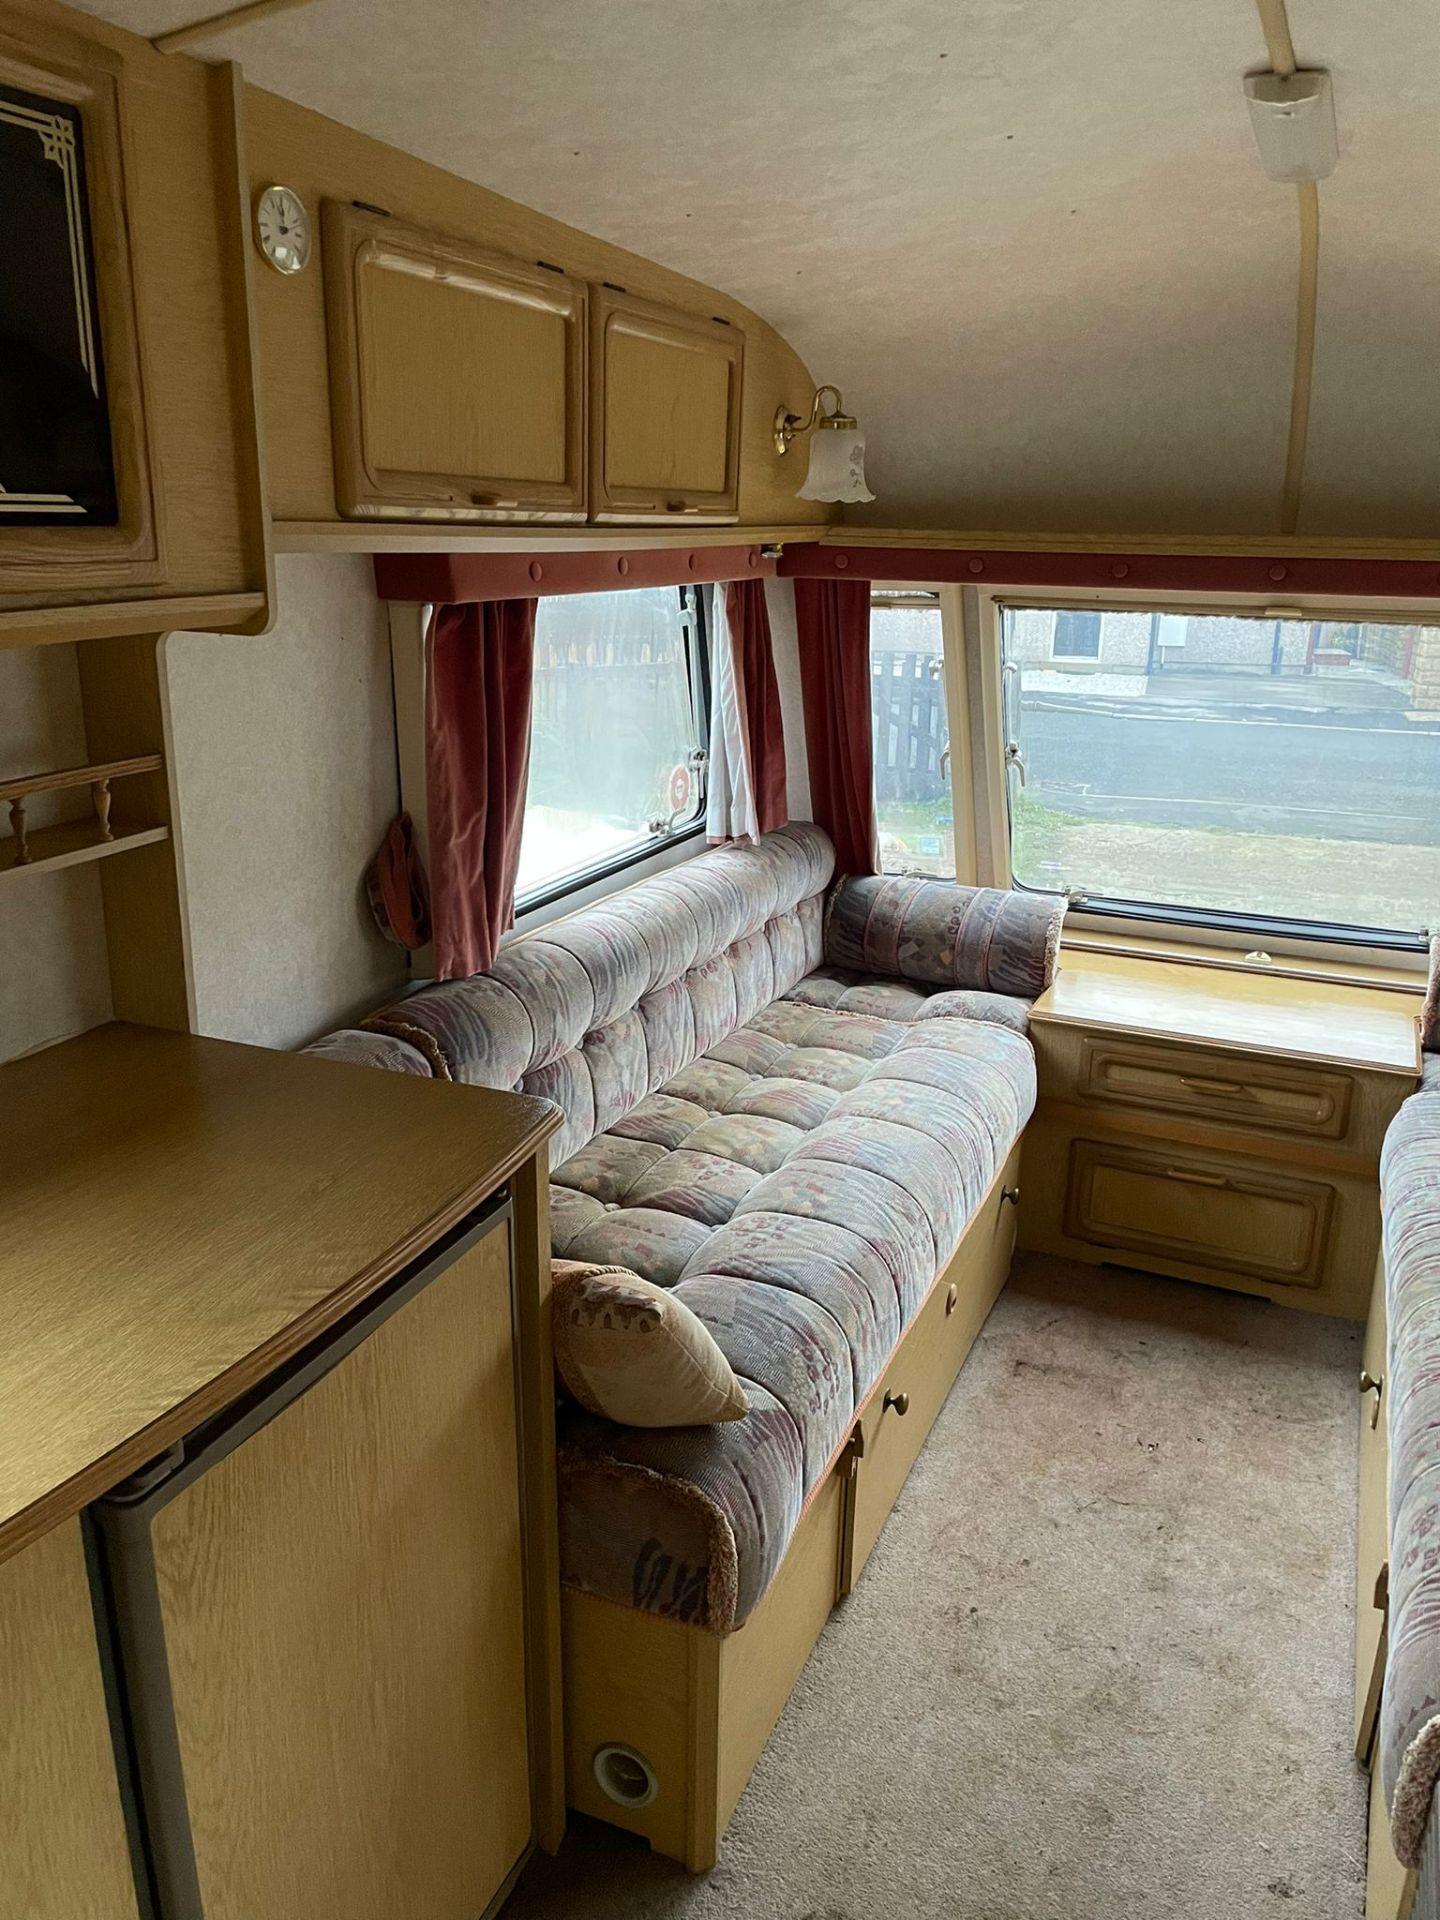 1998 coachman genius 390/2SE 2berth Caravan (NO VAT ON HAMMER) - Image 12 of 16